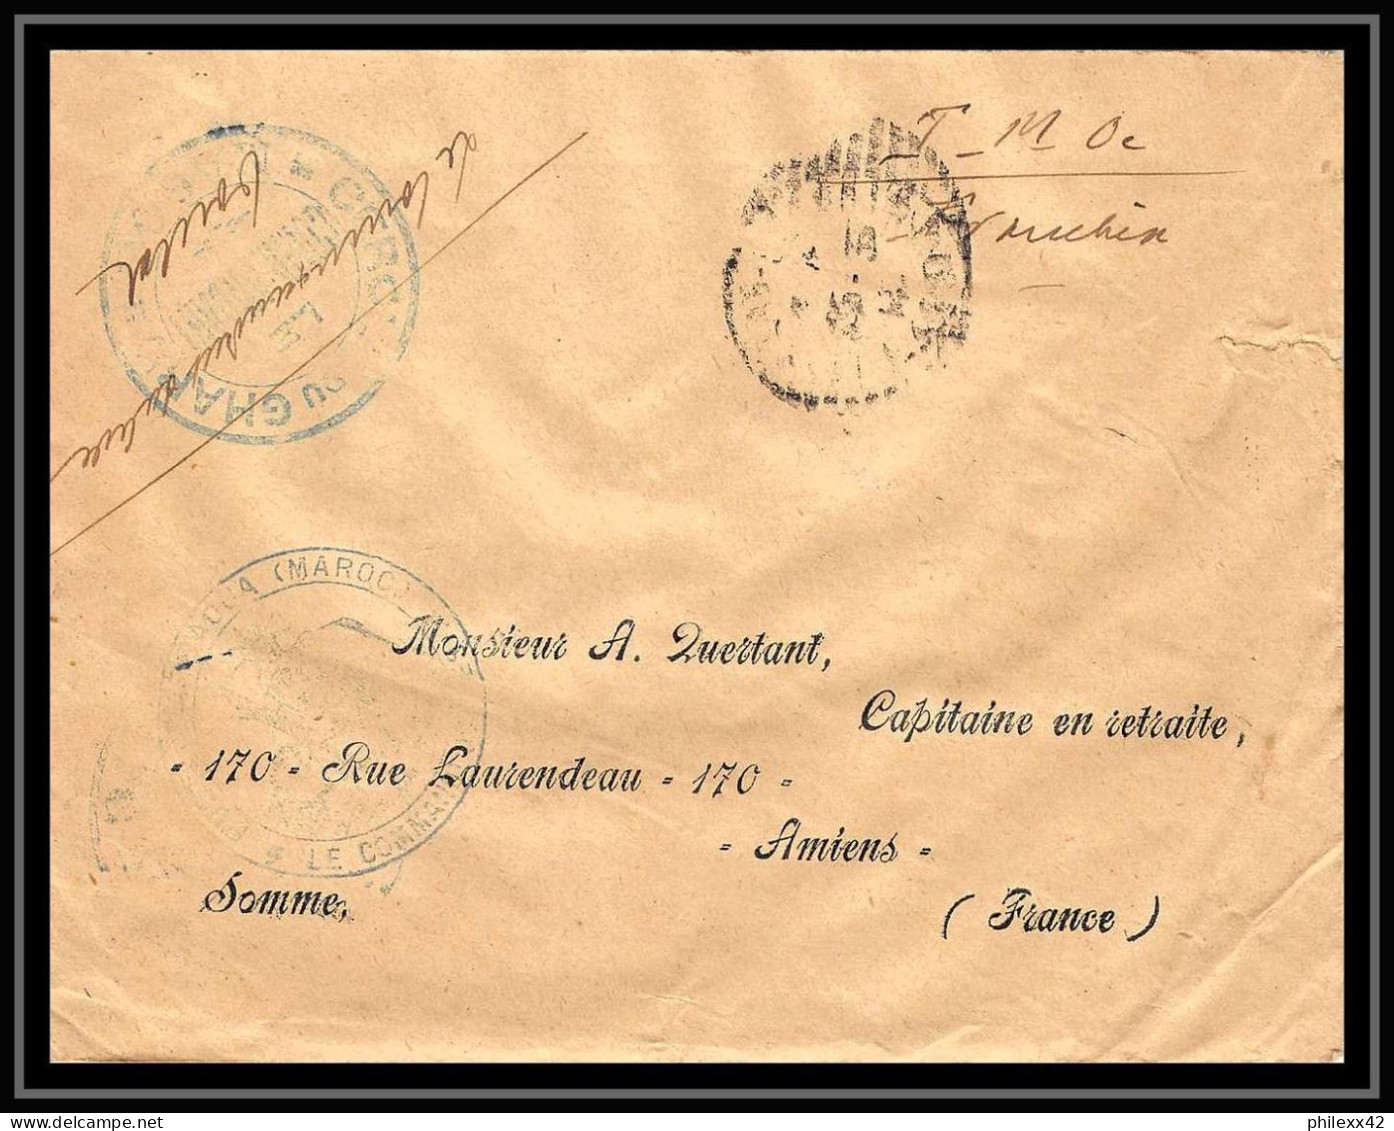 1402 lot 12 Lettres covers guerre 1914/1918 commandants d'armes abat kénitra occupation du maroc War dont 3 signées